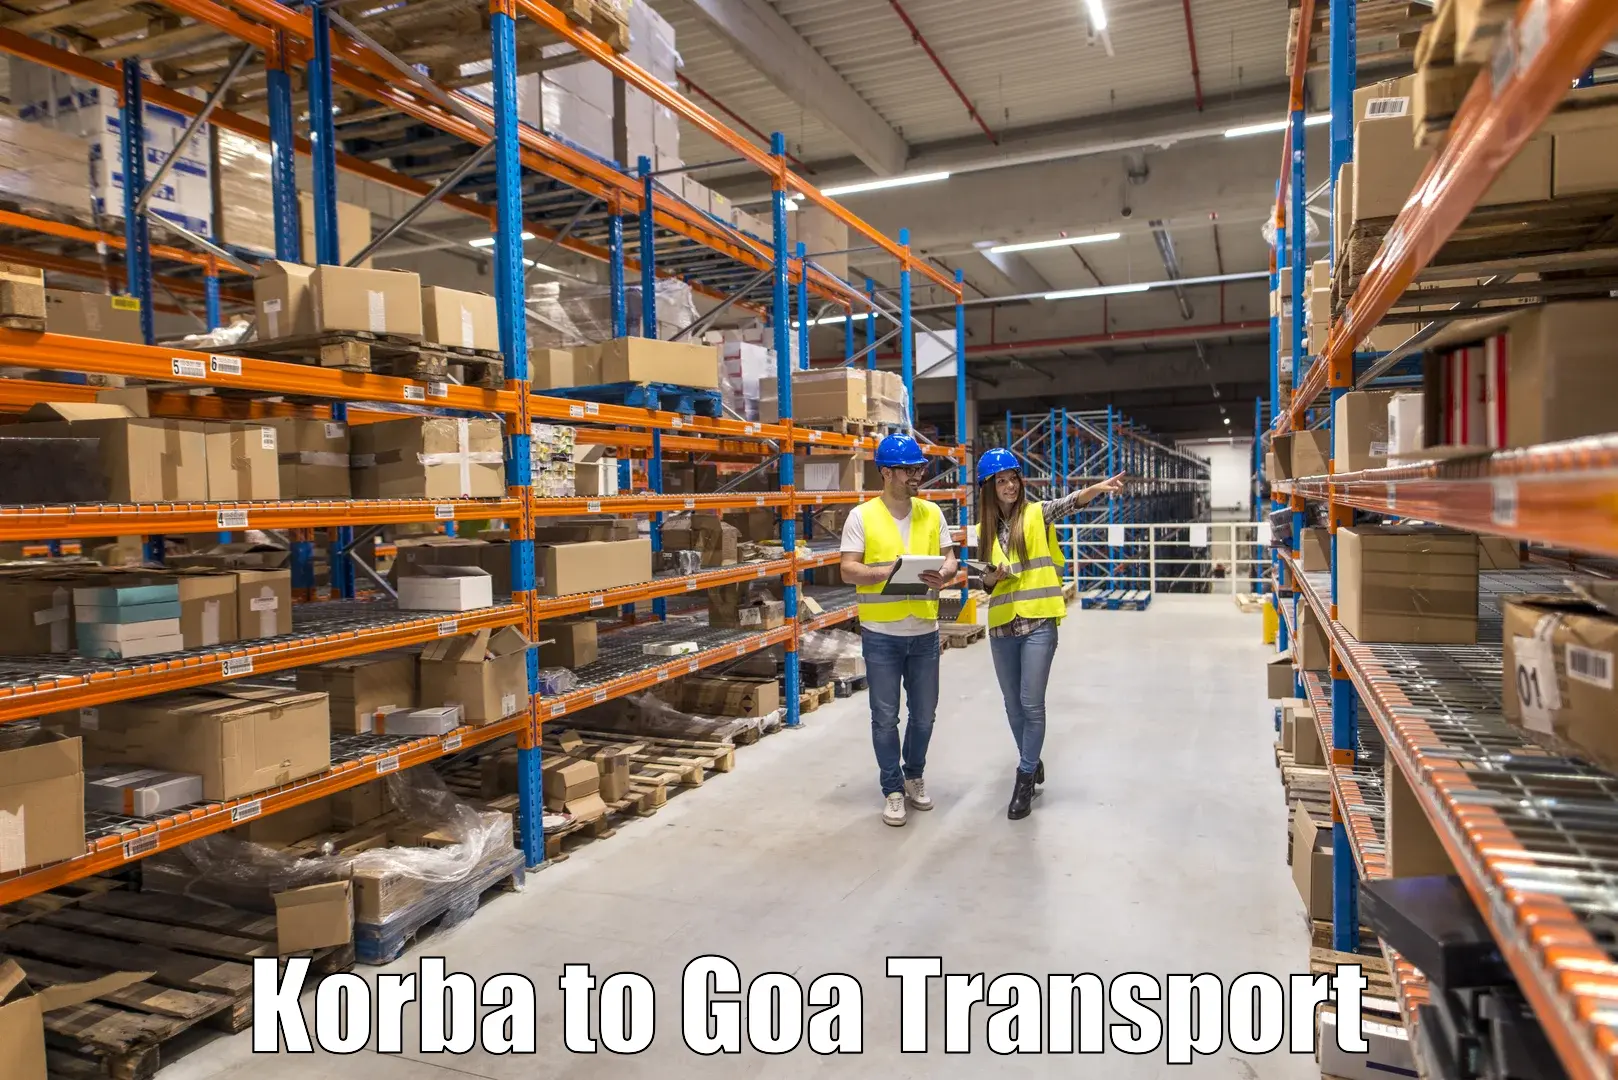 International cargo transportation services Korba to Mormugao Port